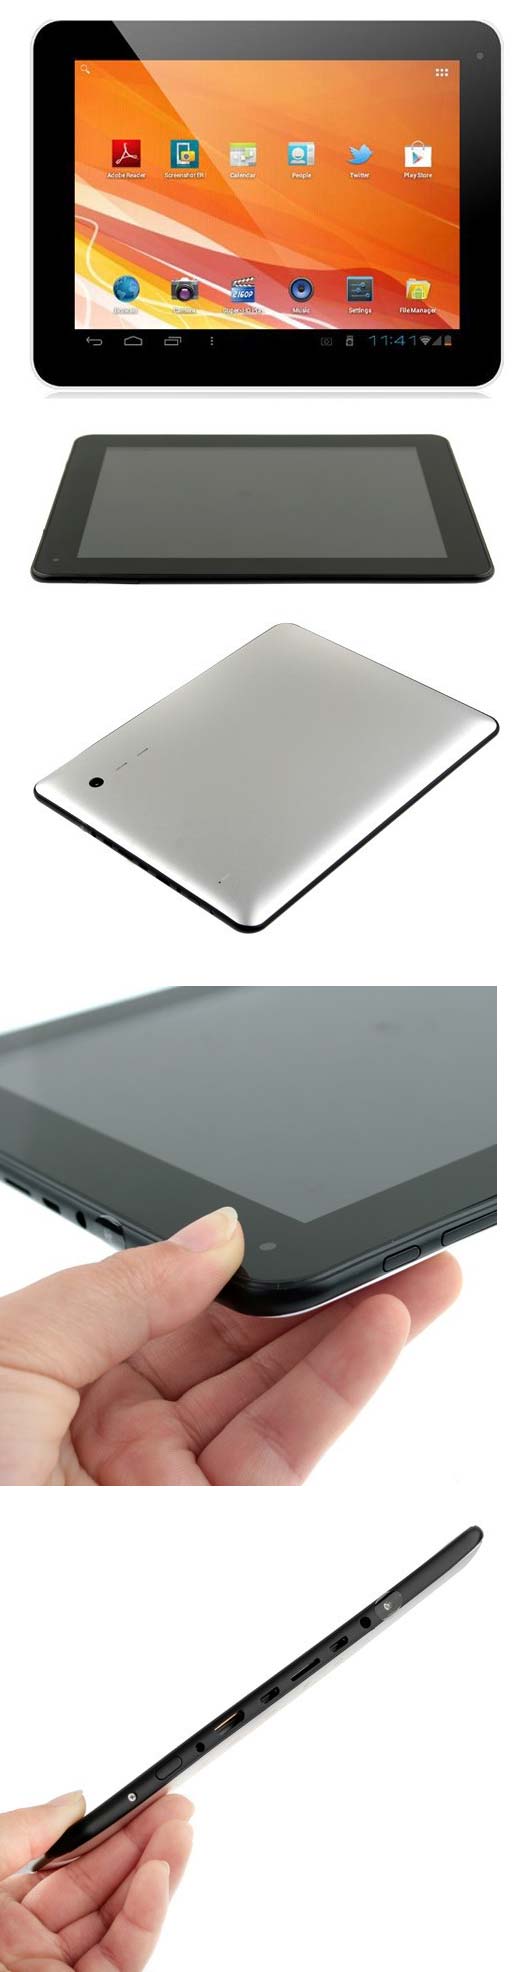 Eken A90 - доступный планшет